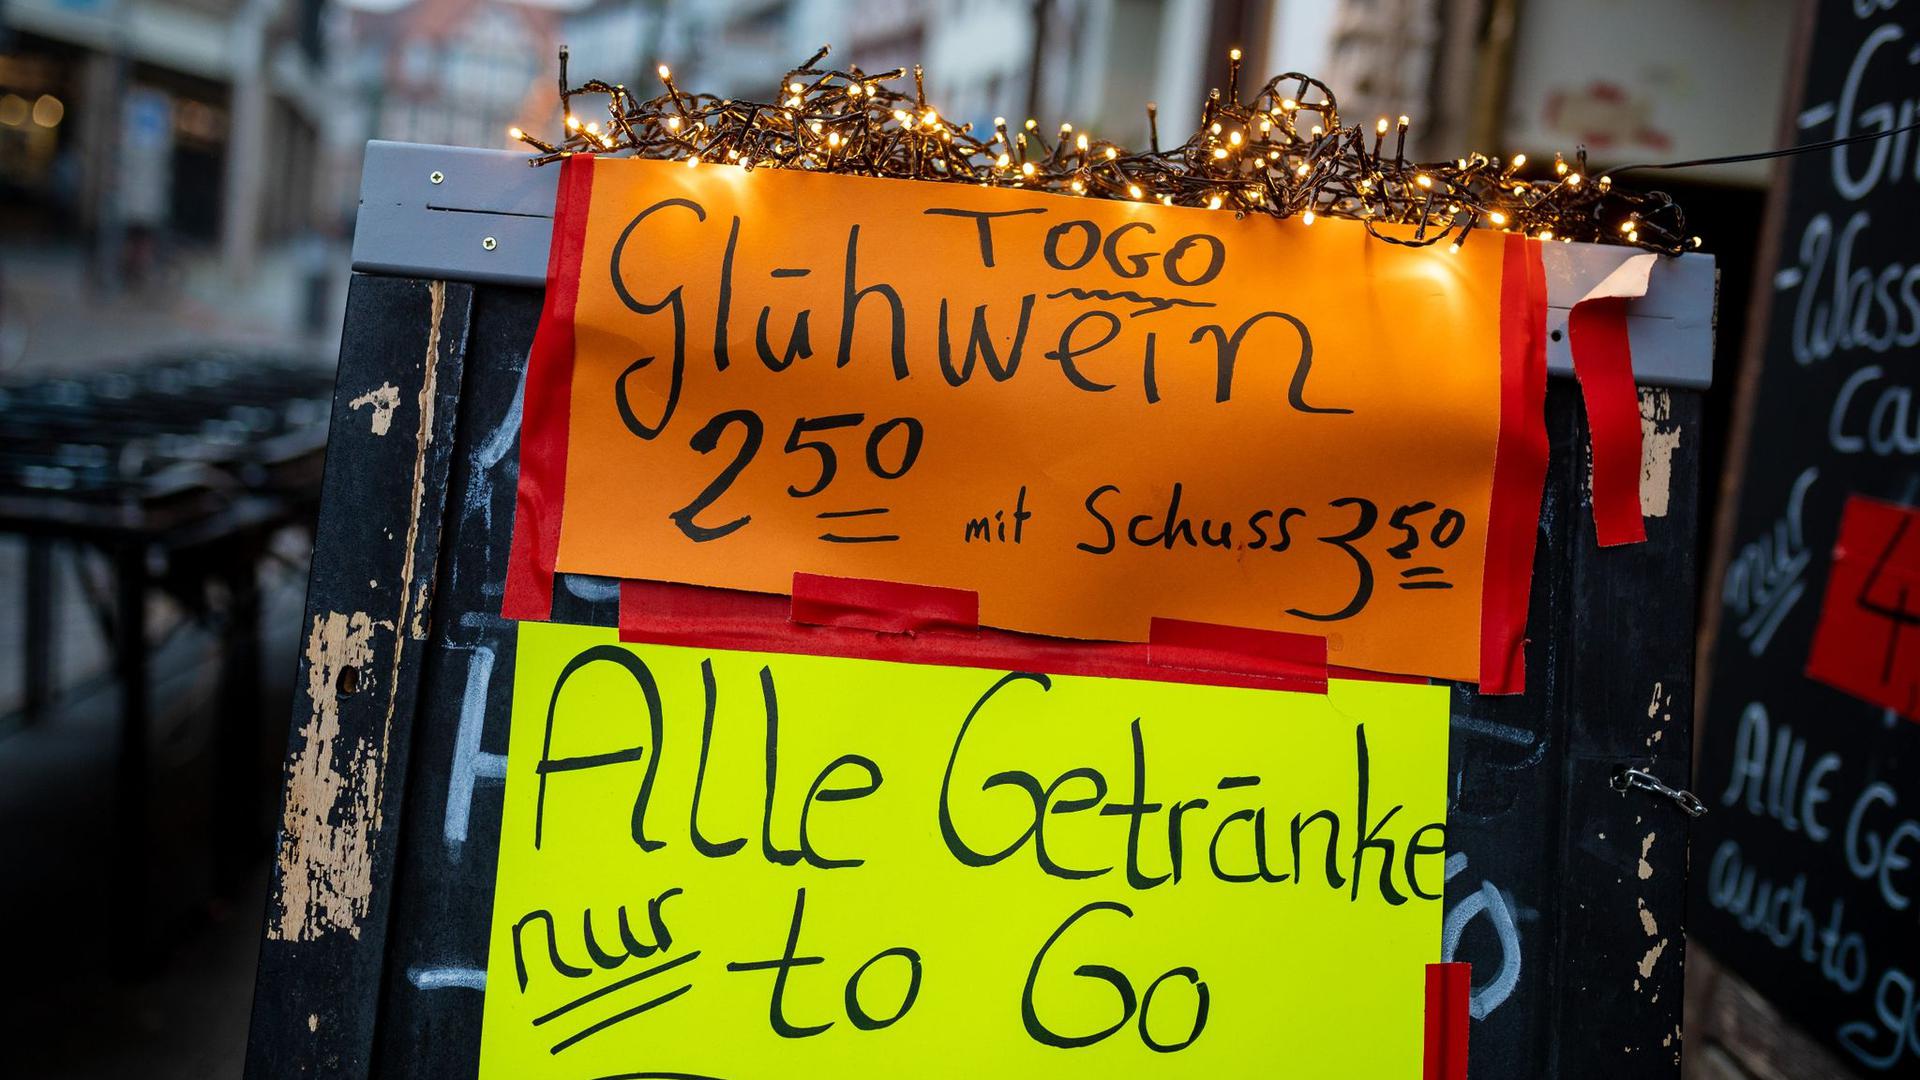 Glühwein „to go“ bewirbt eine Kneipe in der Altstadt in Hannover auf einem Werbeaufsteller.